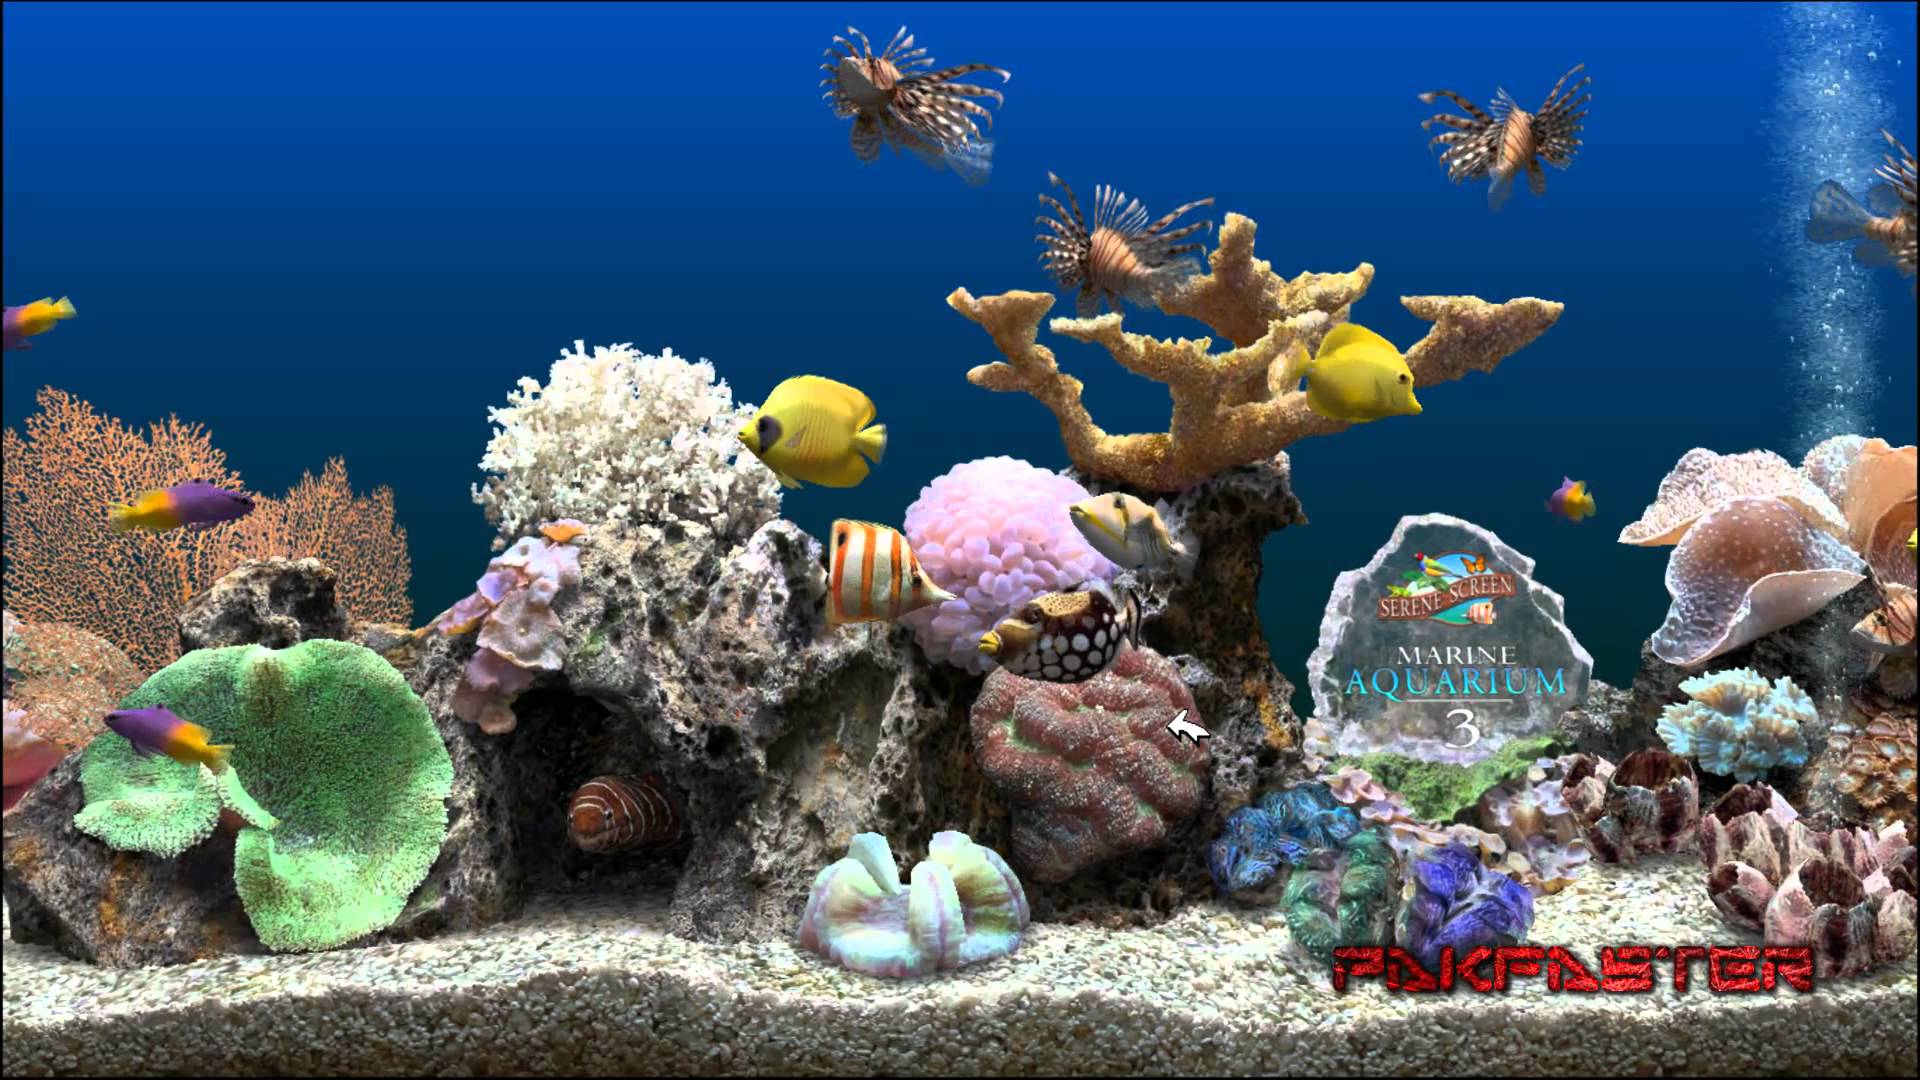 Aquarium Wallpapers and Screensavers - WallpaperSafari